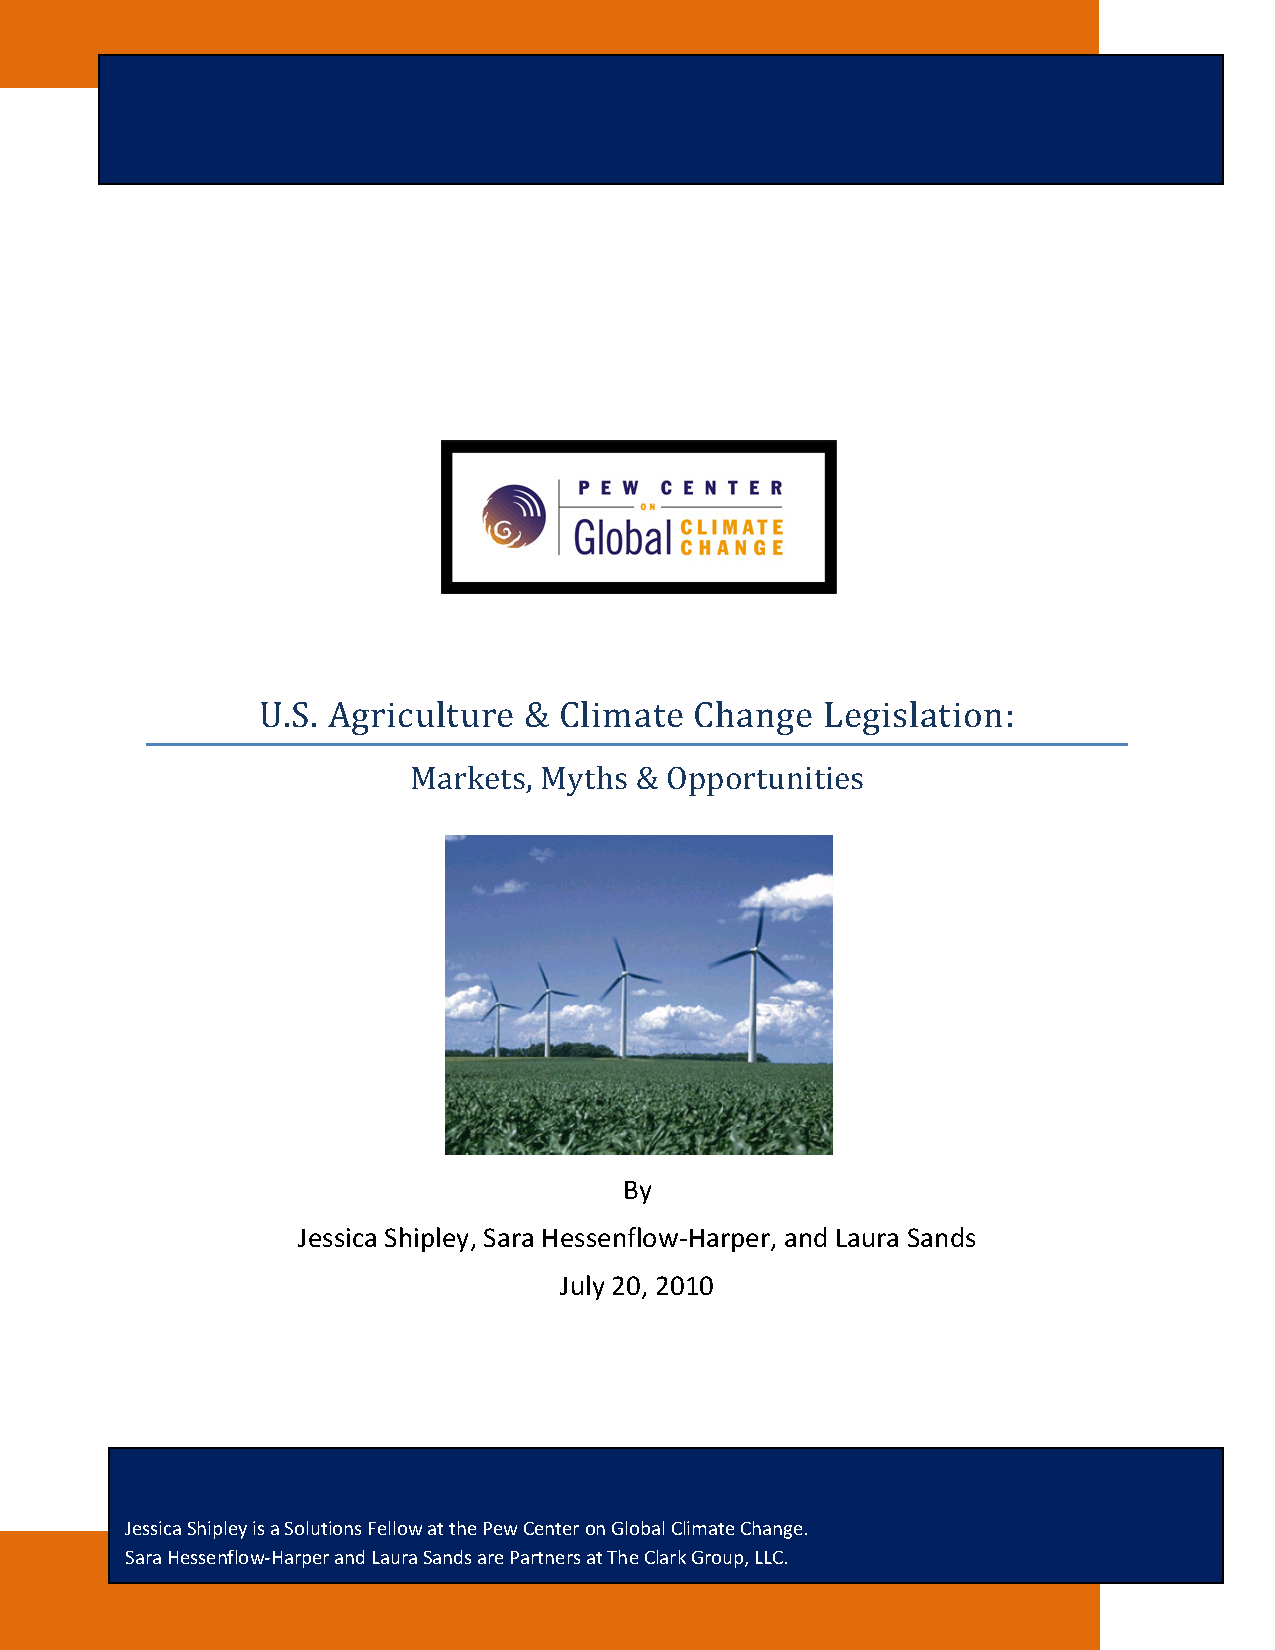 U.S. Agriculture & Climate Change Legislation Markets, Myths